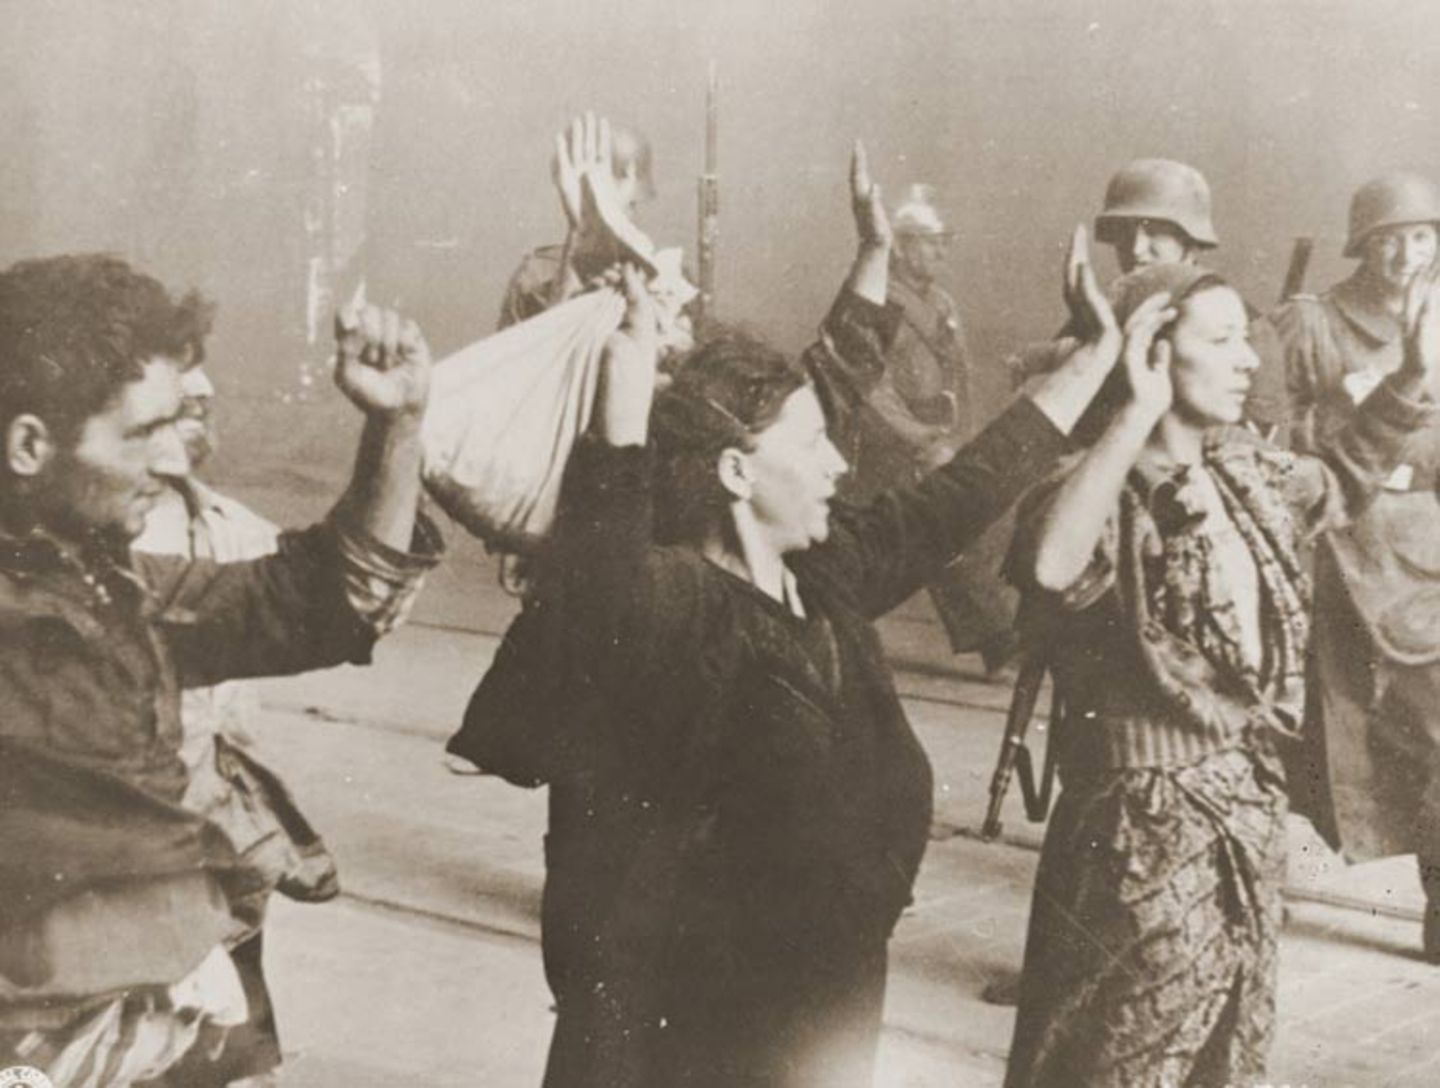 80. Jahrestag: Mit vorgehaltener Waffe führen SS-Männer jüdische Familien währen des Aufstands im Warschauer Ghetto ab. Die Widerständler haben den Deutschen wenig entgegenzusetzen. Dennoch gelingt es ihnen, den Besatzern empfindliche Verluste zuzufügen